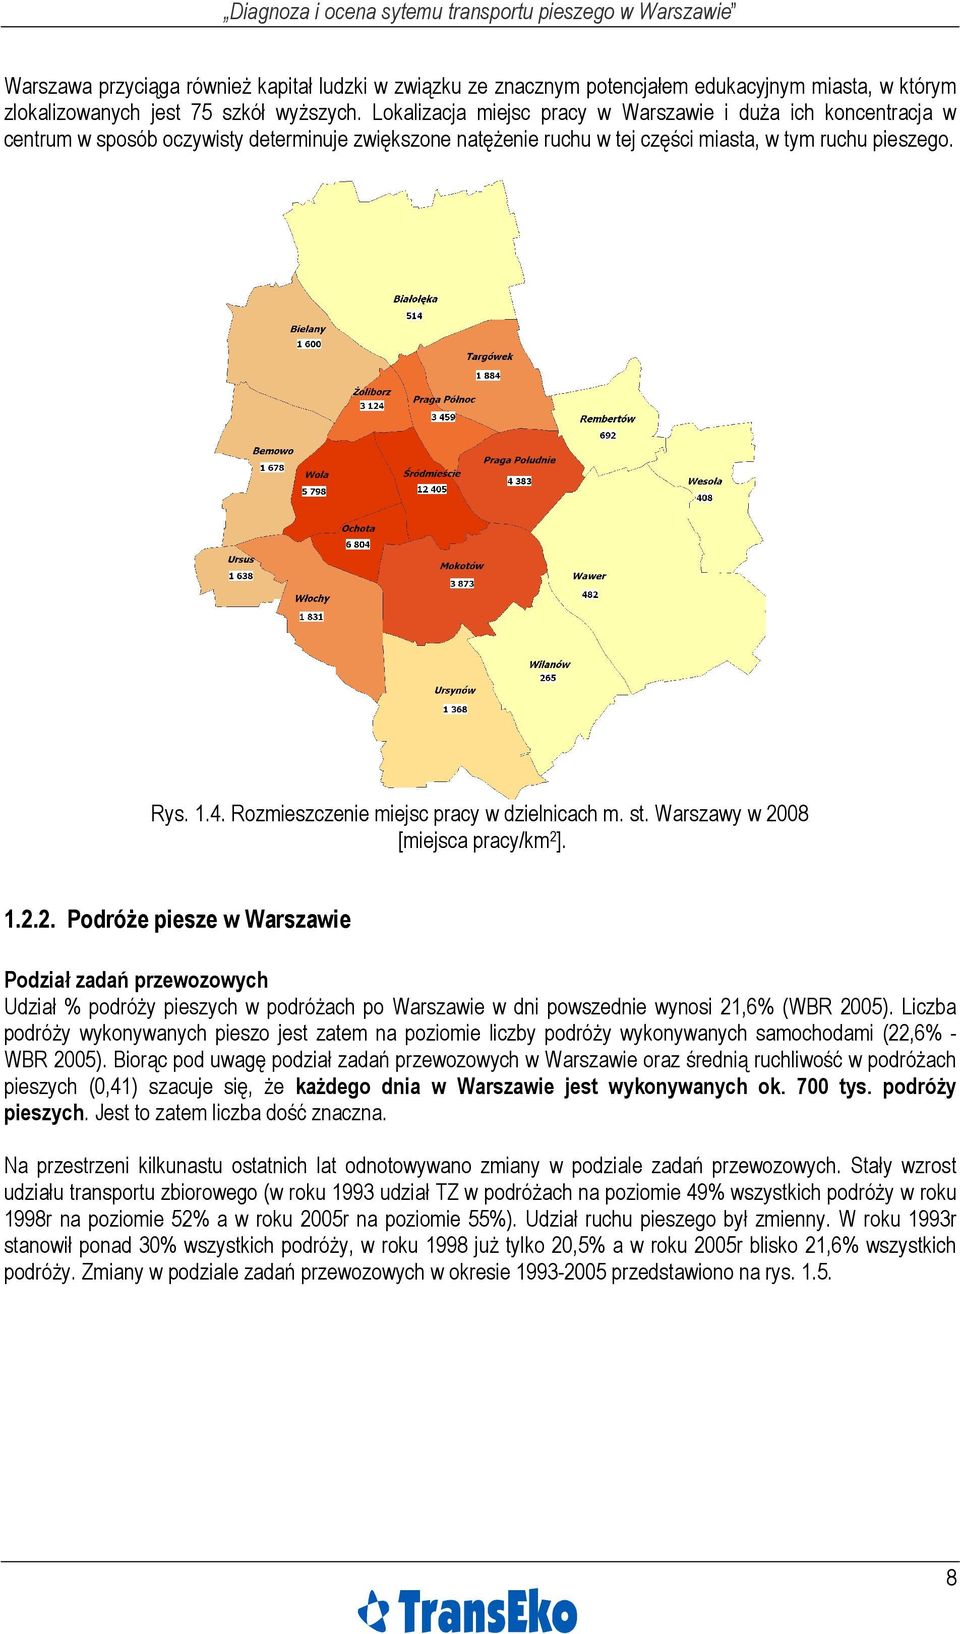 Rozmieszczenie miejsc pracy w dzielnicach m. st. Warszawy w 20